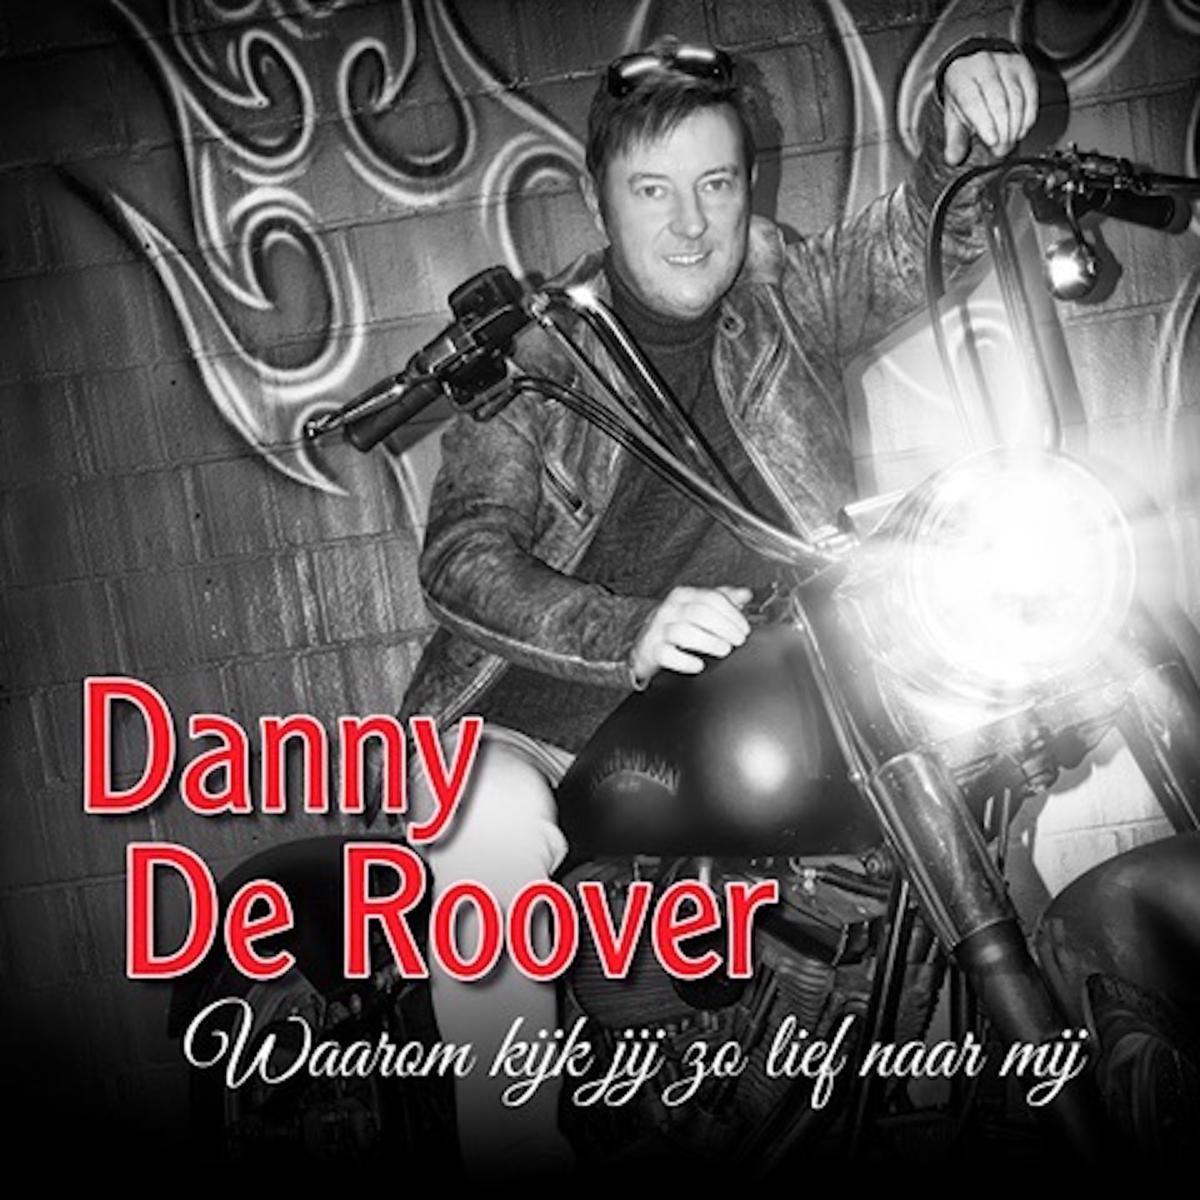 Danny De Roover brengt nieuwe single uit, dochter Thaisa pakt uit met debuutsingle